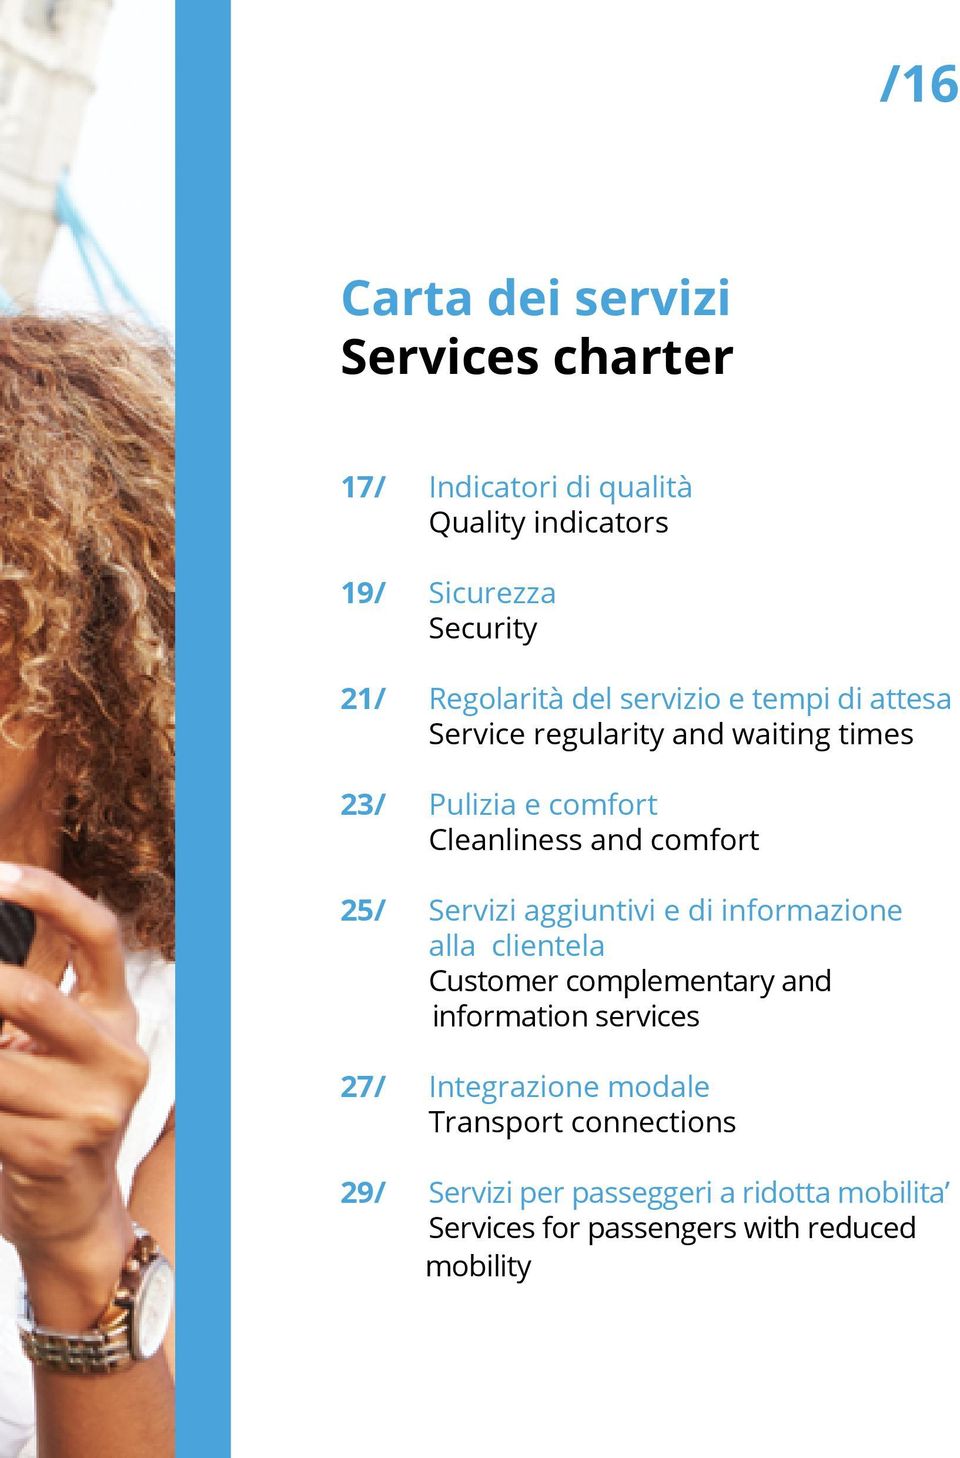 comfort 25/ Servizi aggiuntivi e di informazione alla clientela Customer complementary and information services 27/